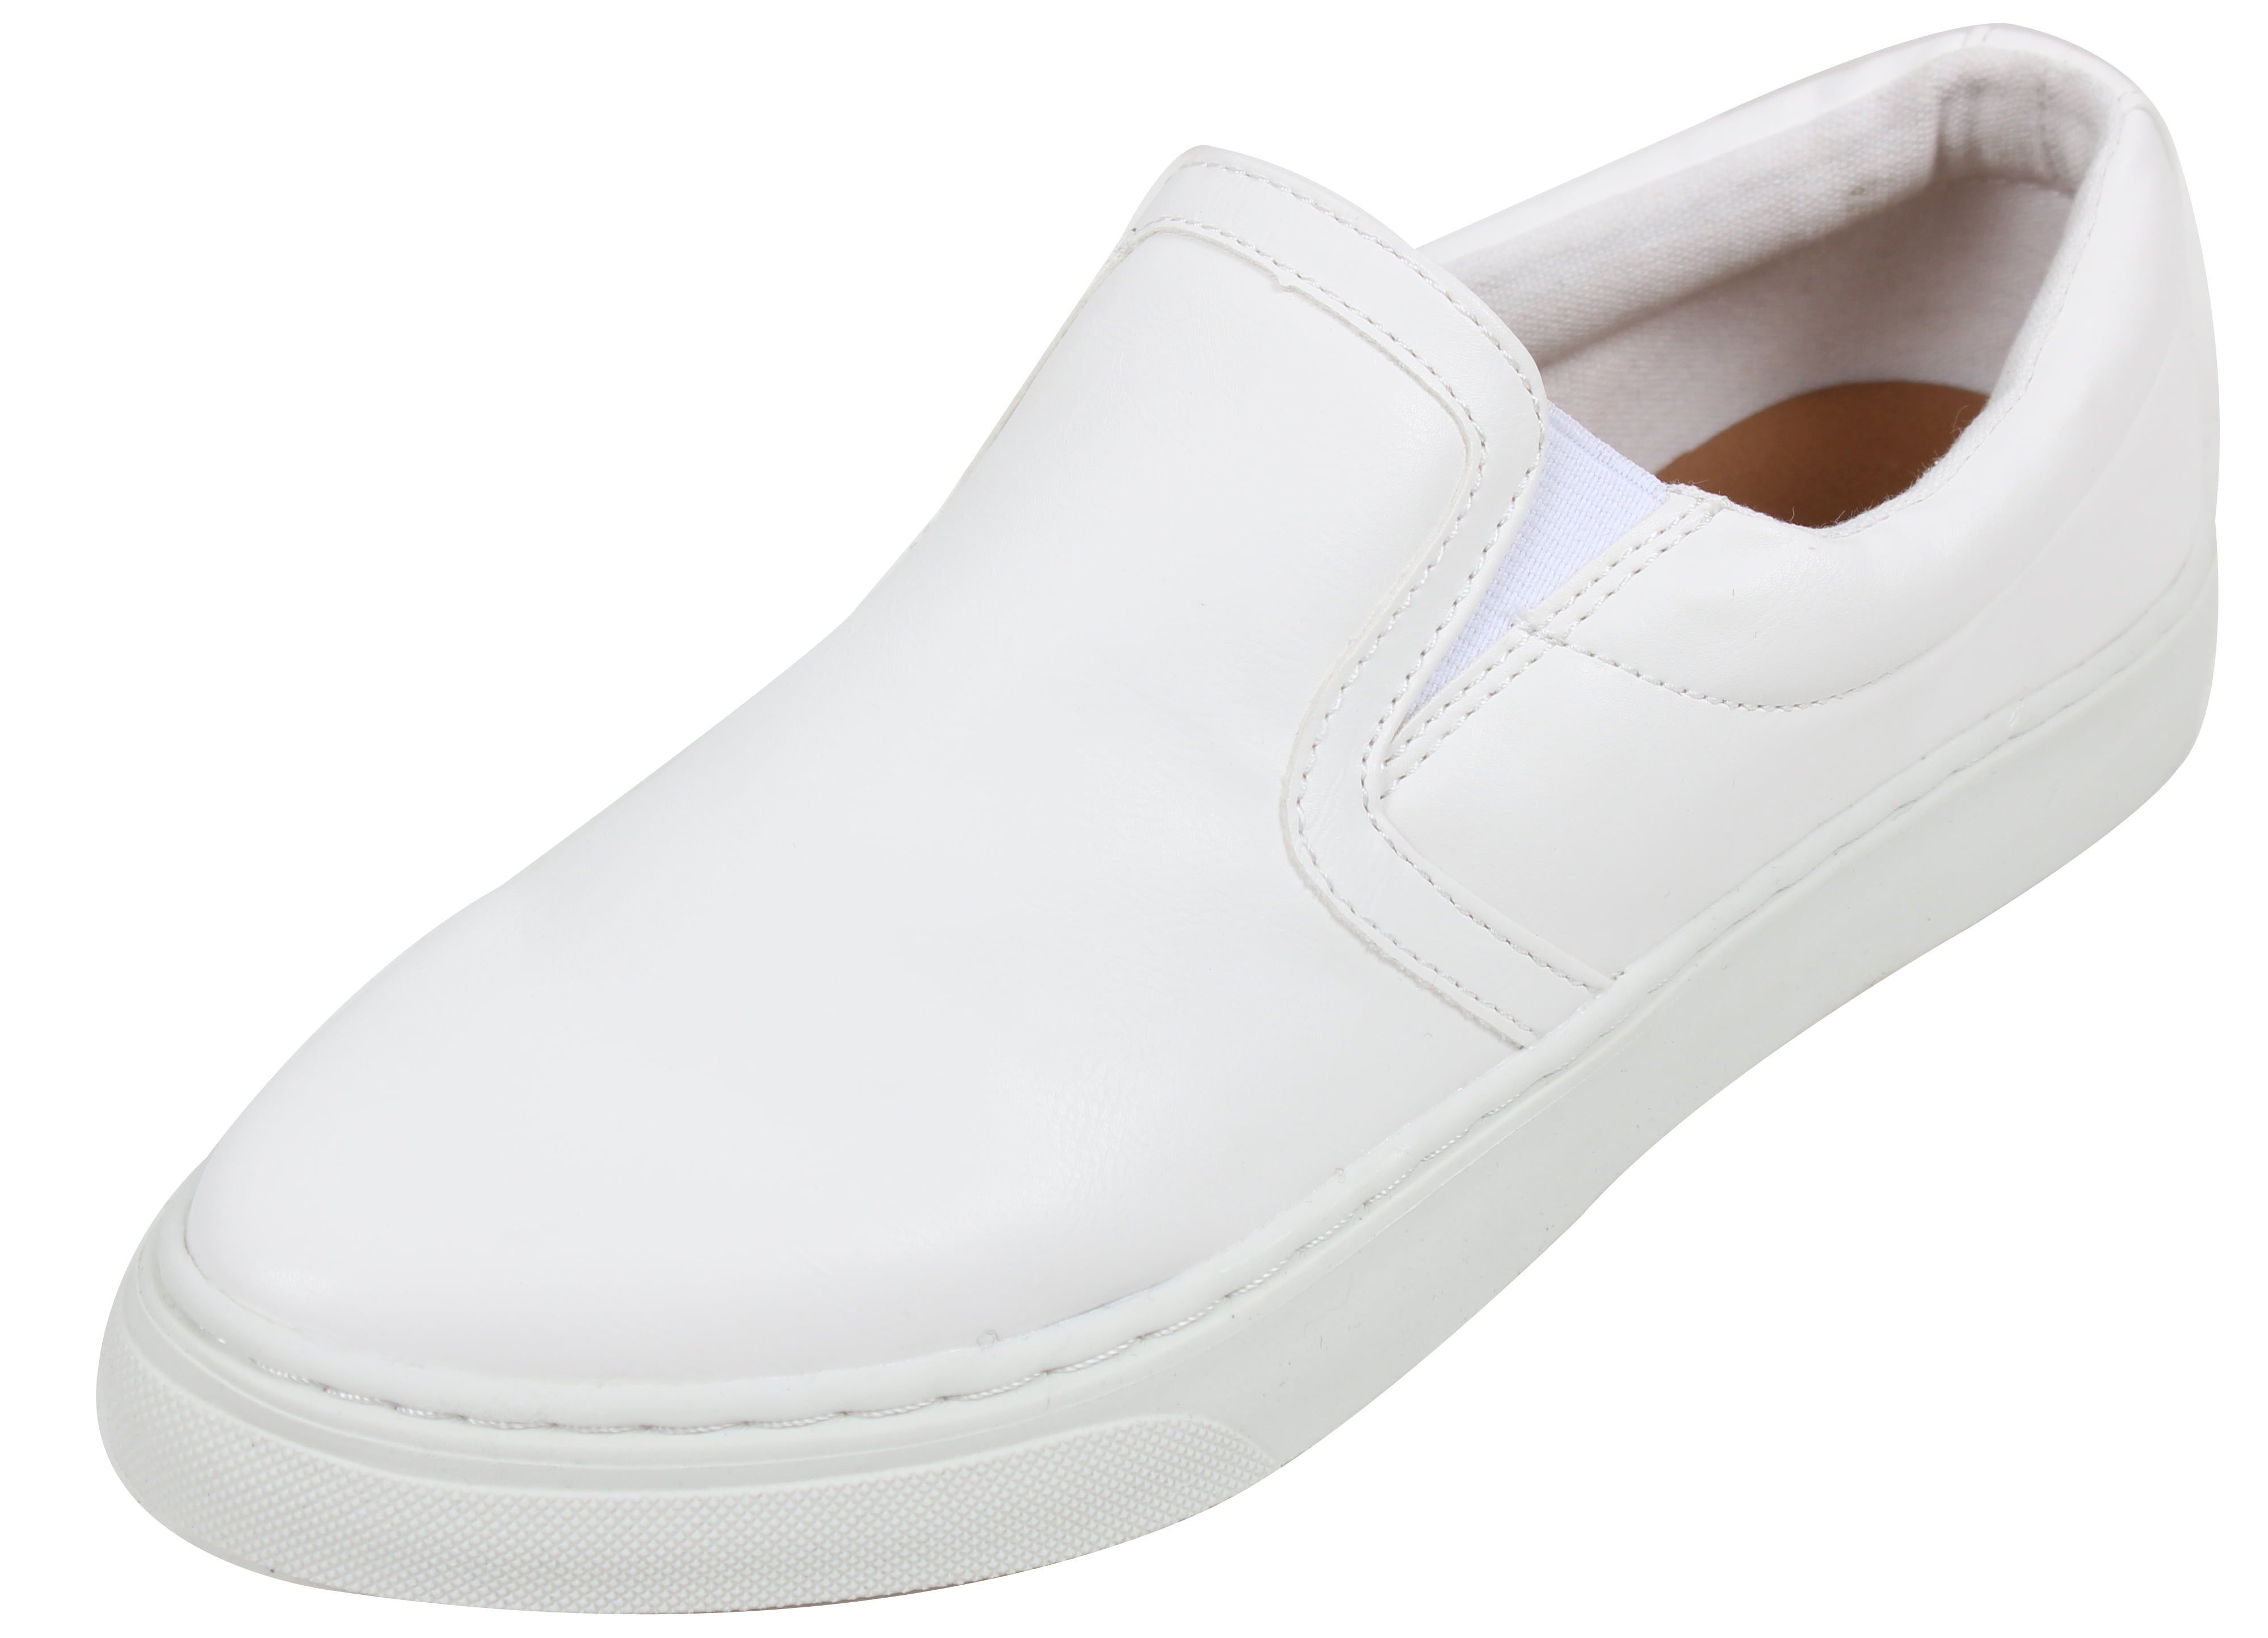 white rubber sole